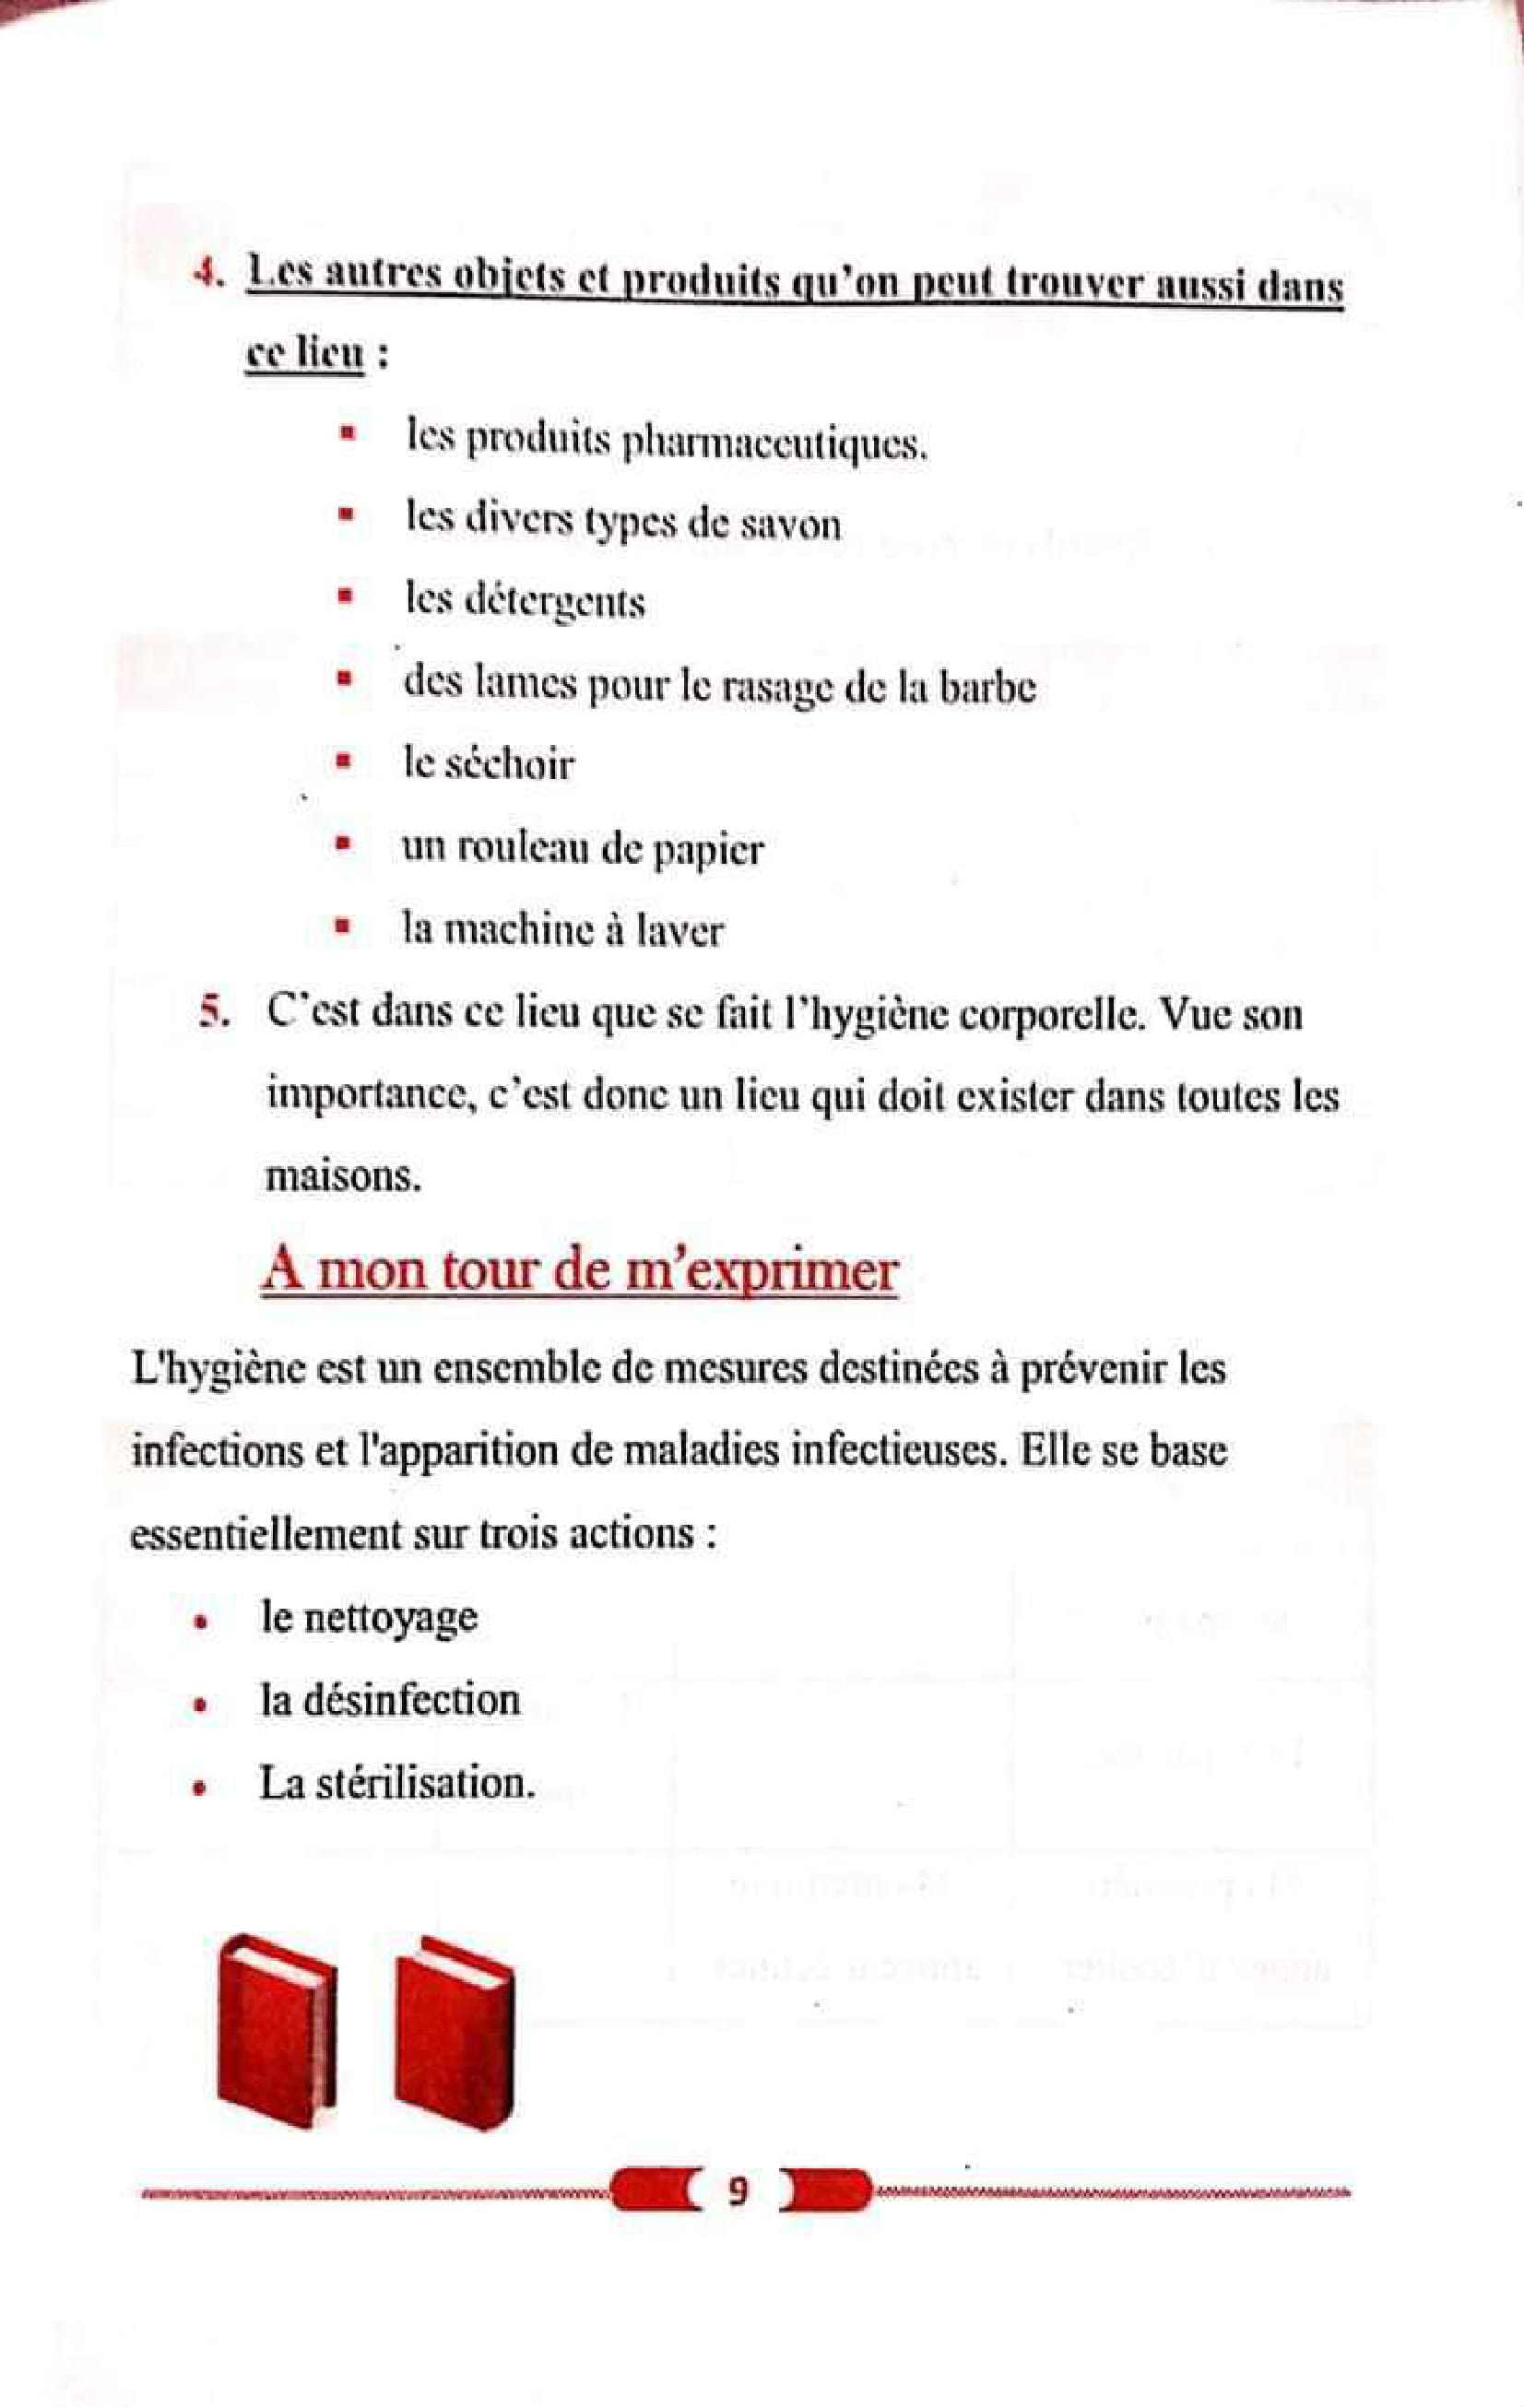 حل تمارين صفحة 11 الفرنسية للسنة الأولى متوسط الجيل الثاني